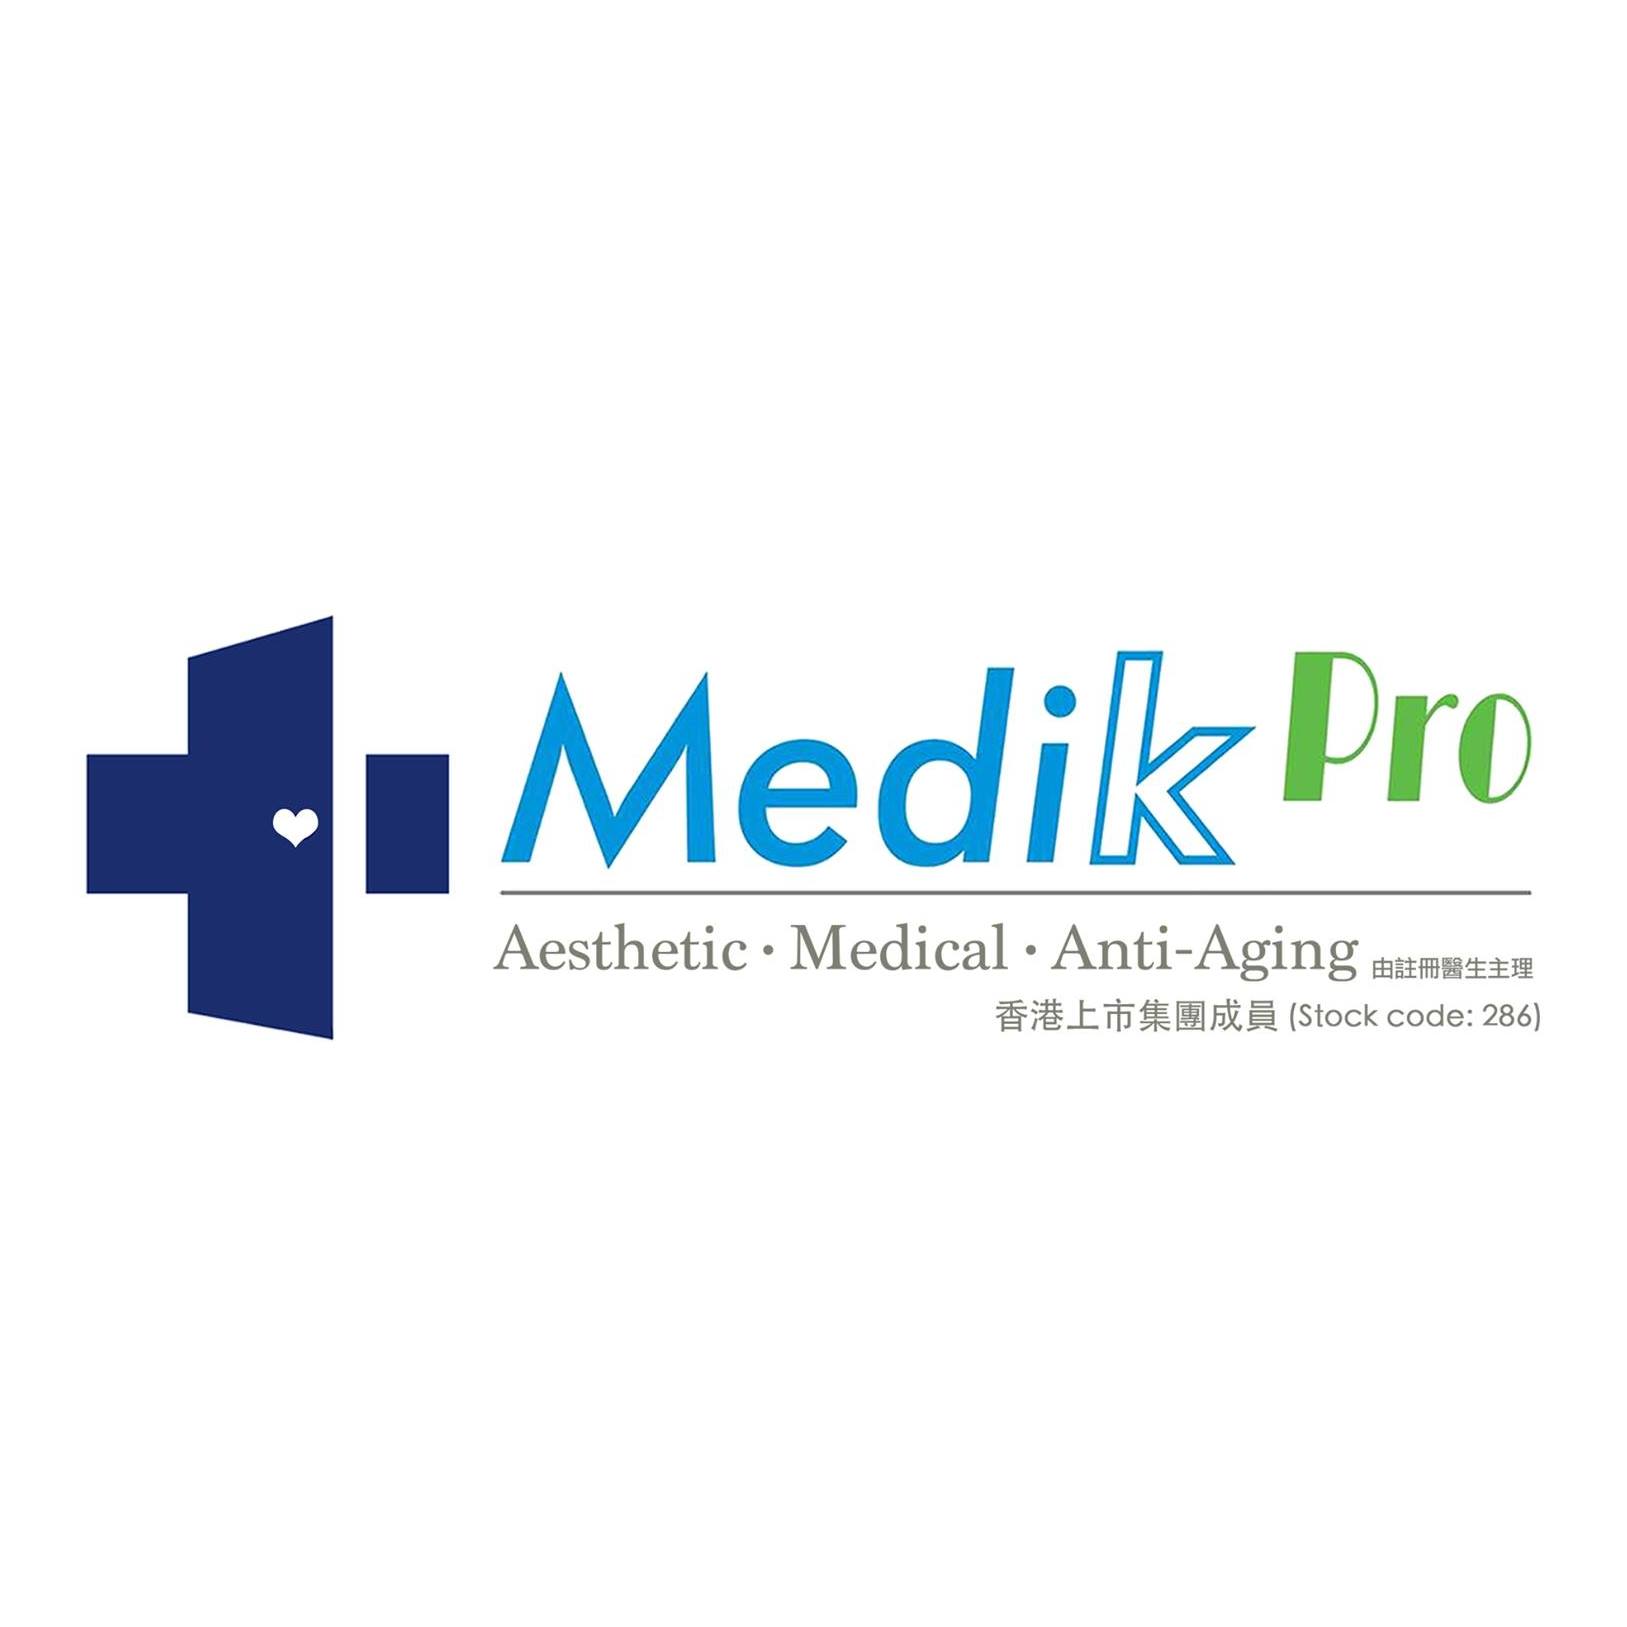 医学美容: Medik Pro (旺角分店)